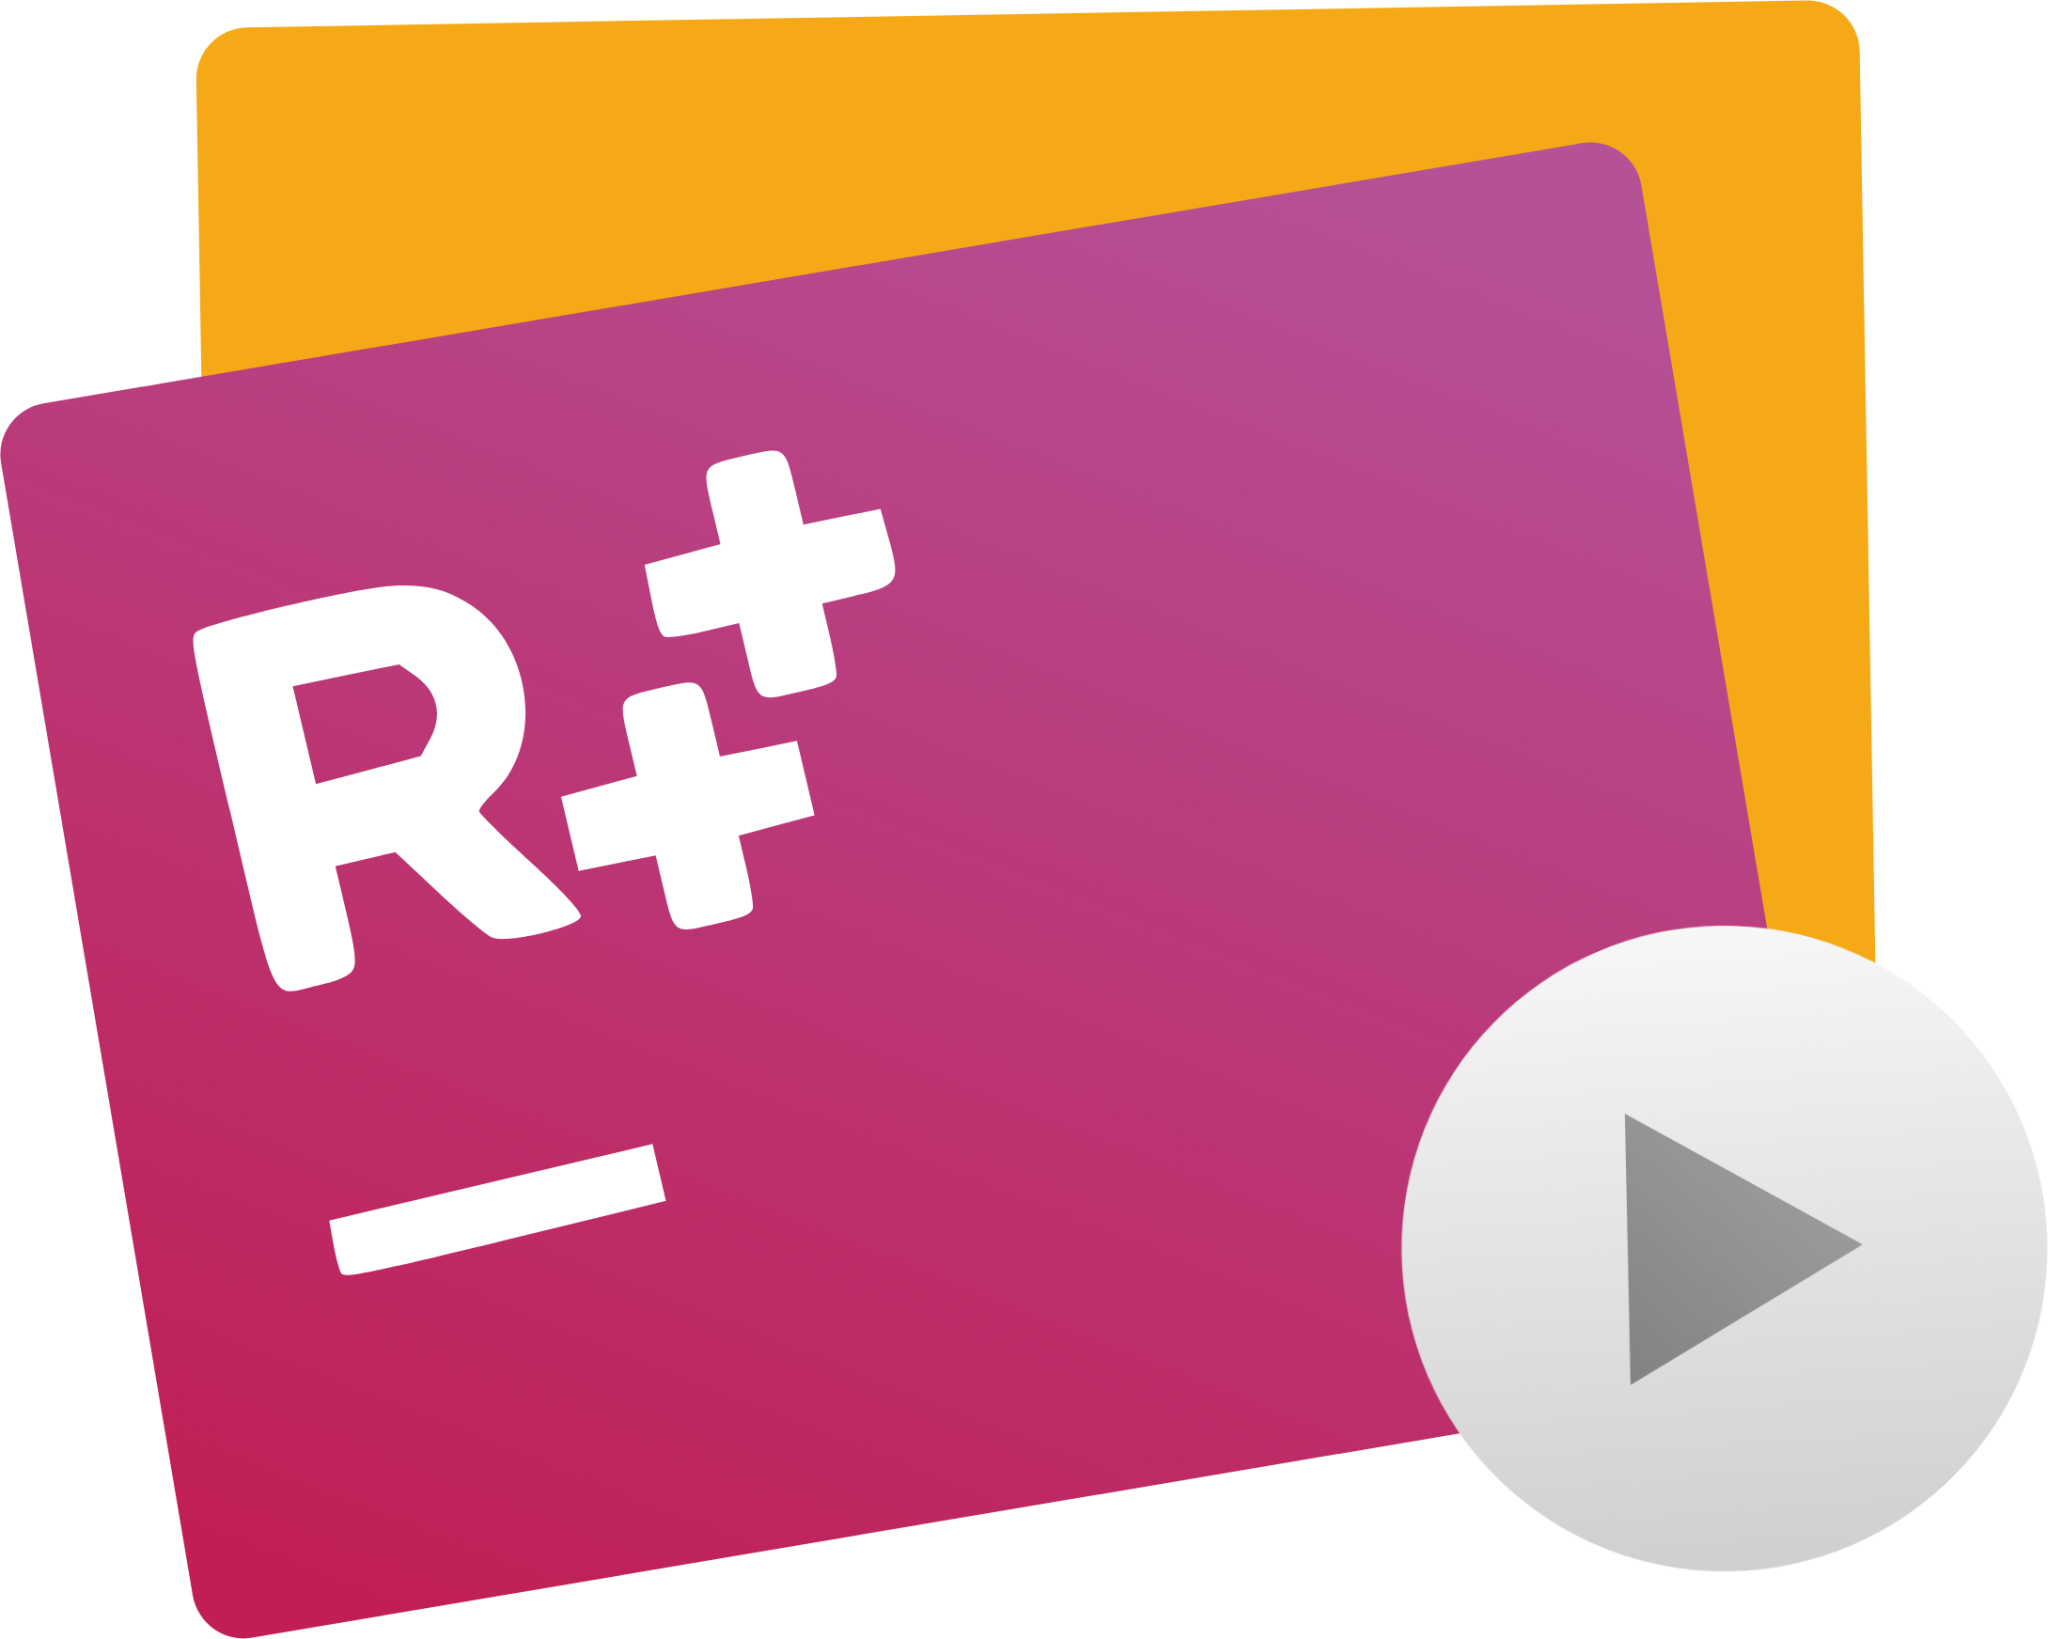 resharper c++ icon